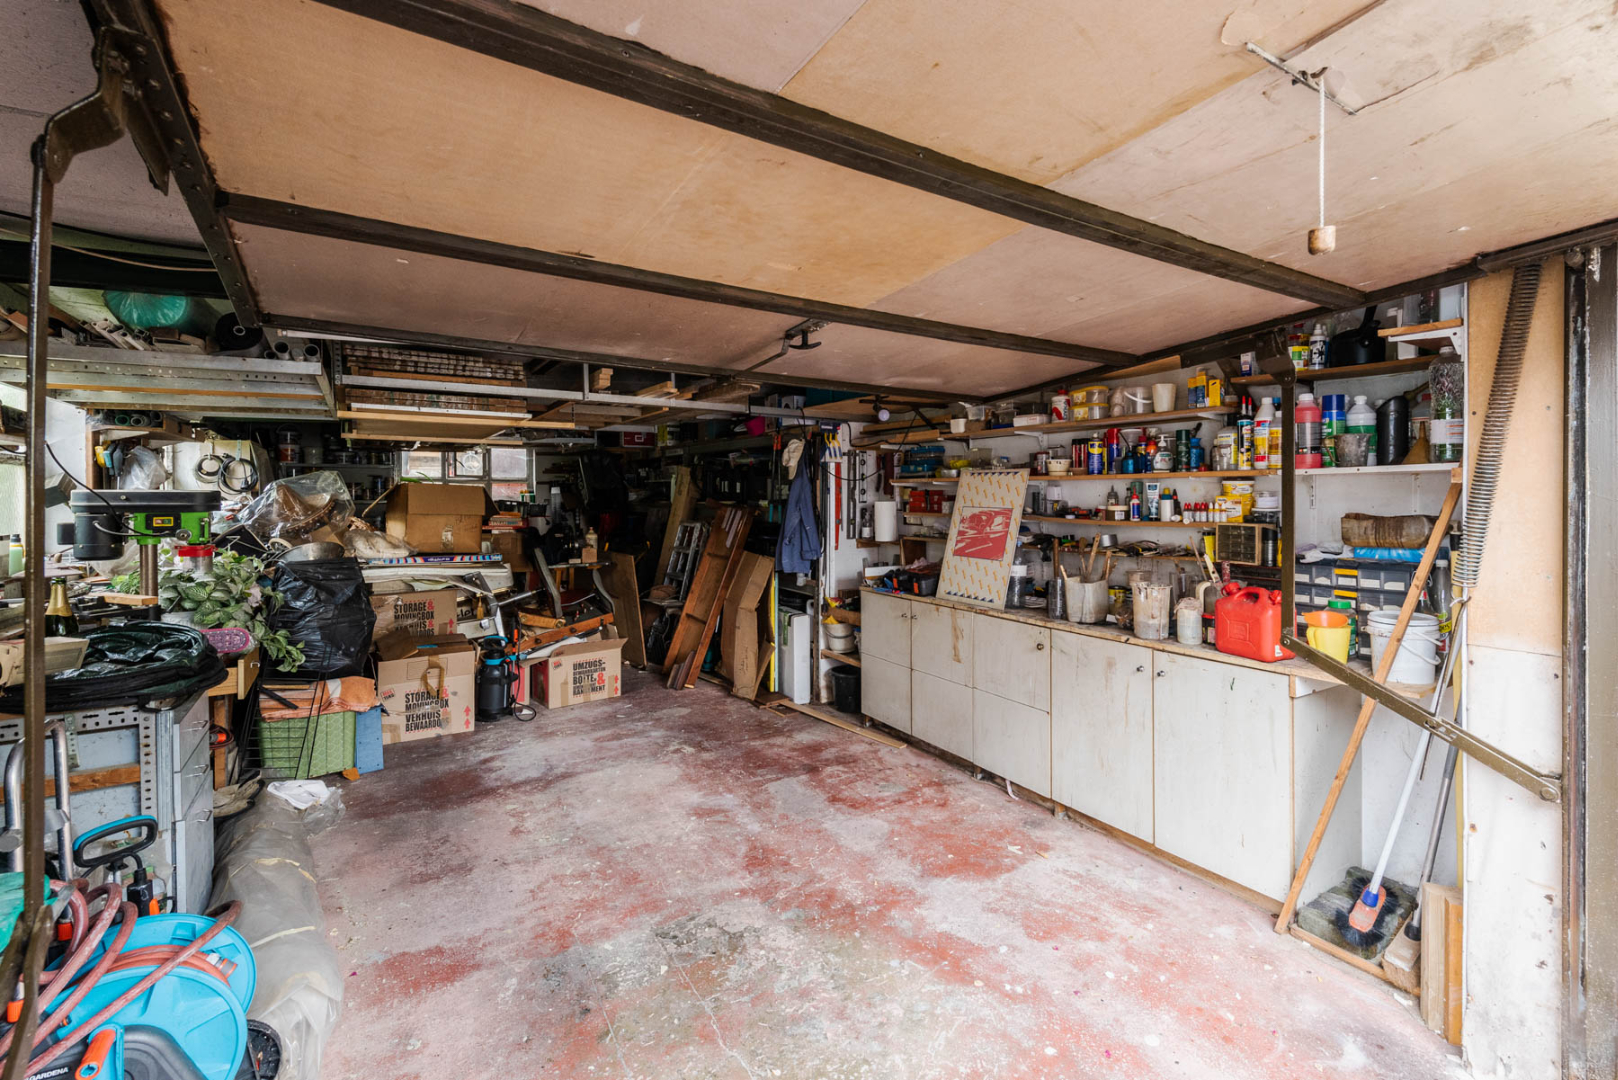 WONING met 4 kamers + garage/atelier 1640 SINT-GENESIUS-RODE 